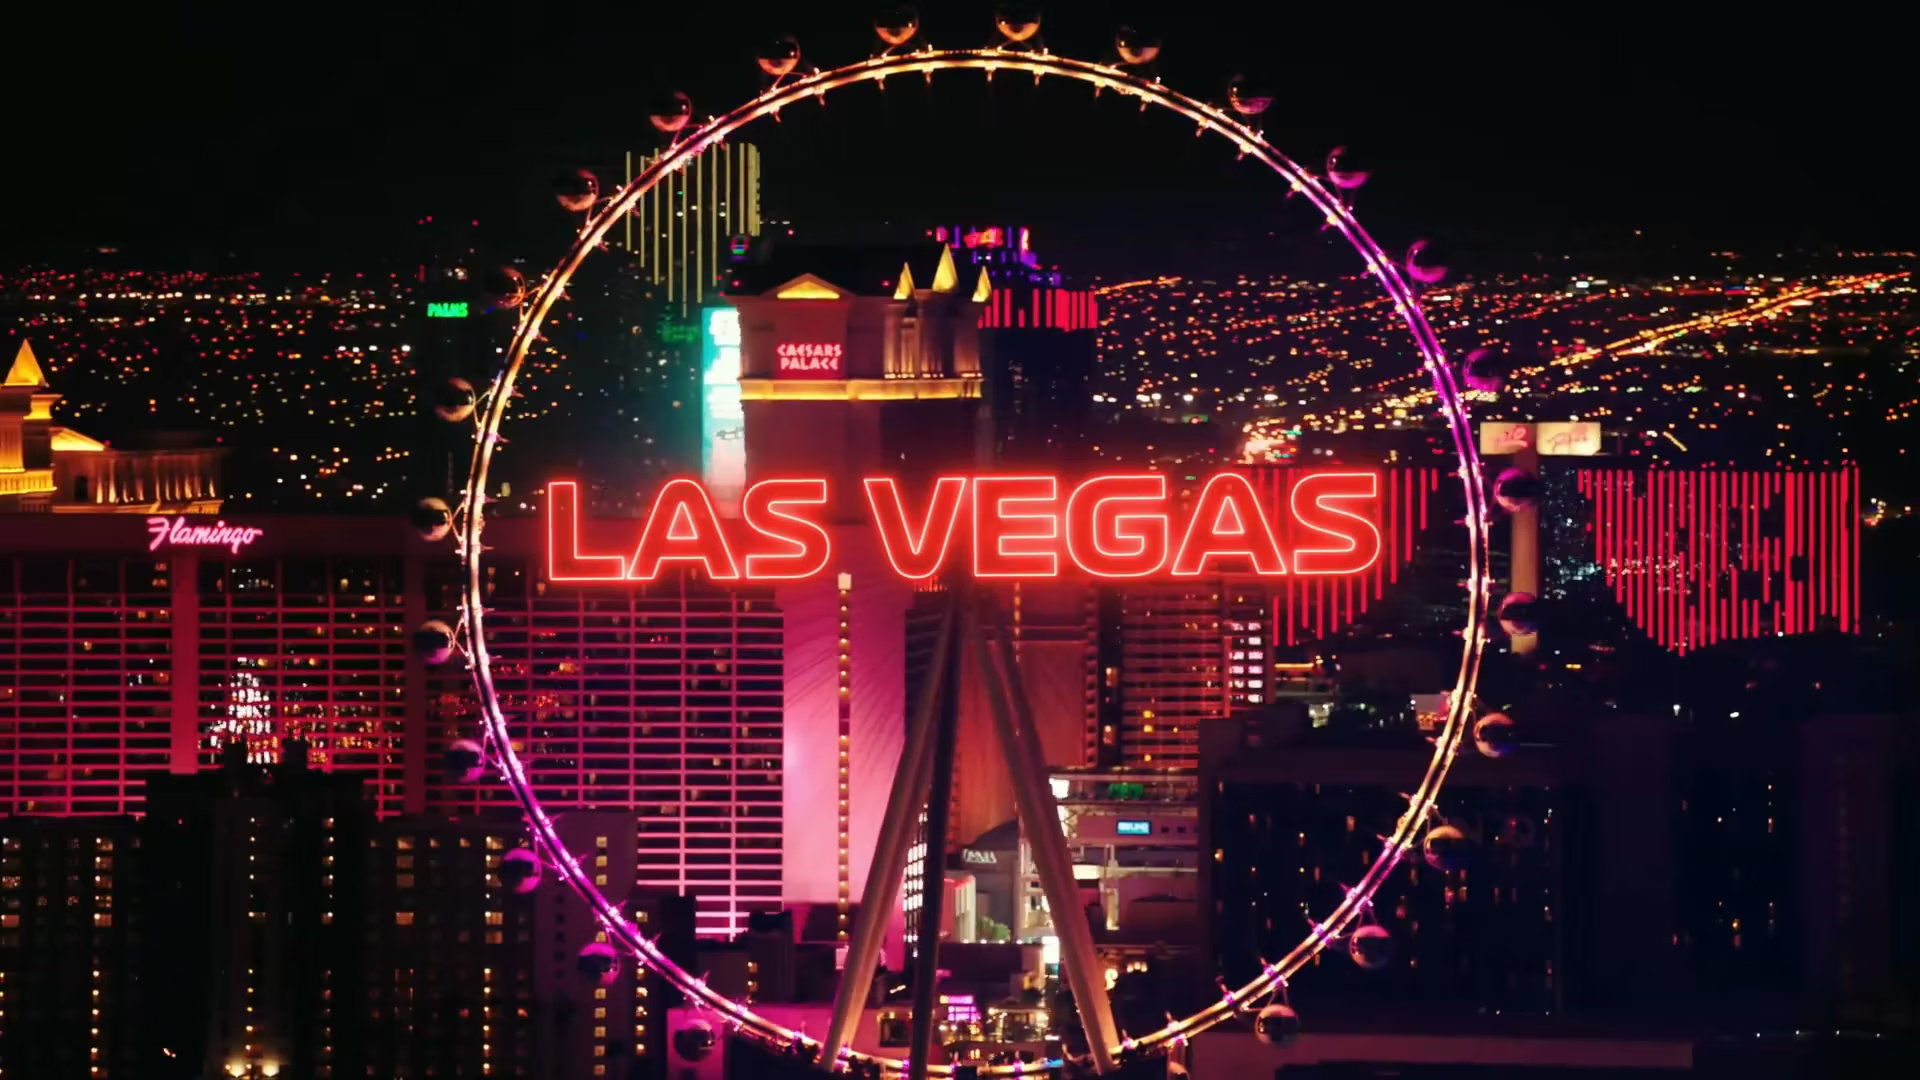 Beispielbild: Las Vegas bei Nacht mit Neon-Leuchtreklame und Riesenrad